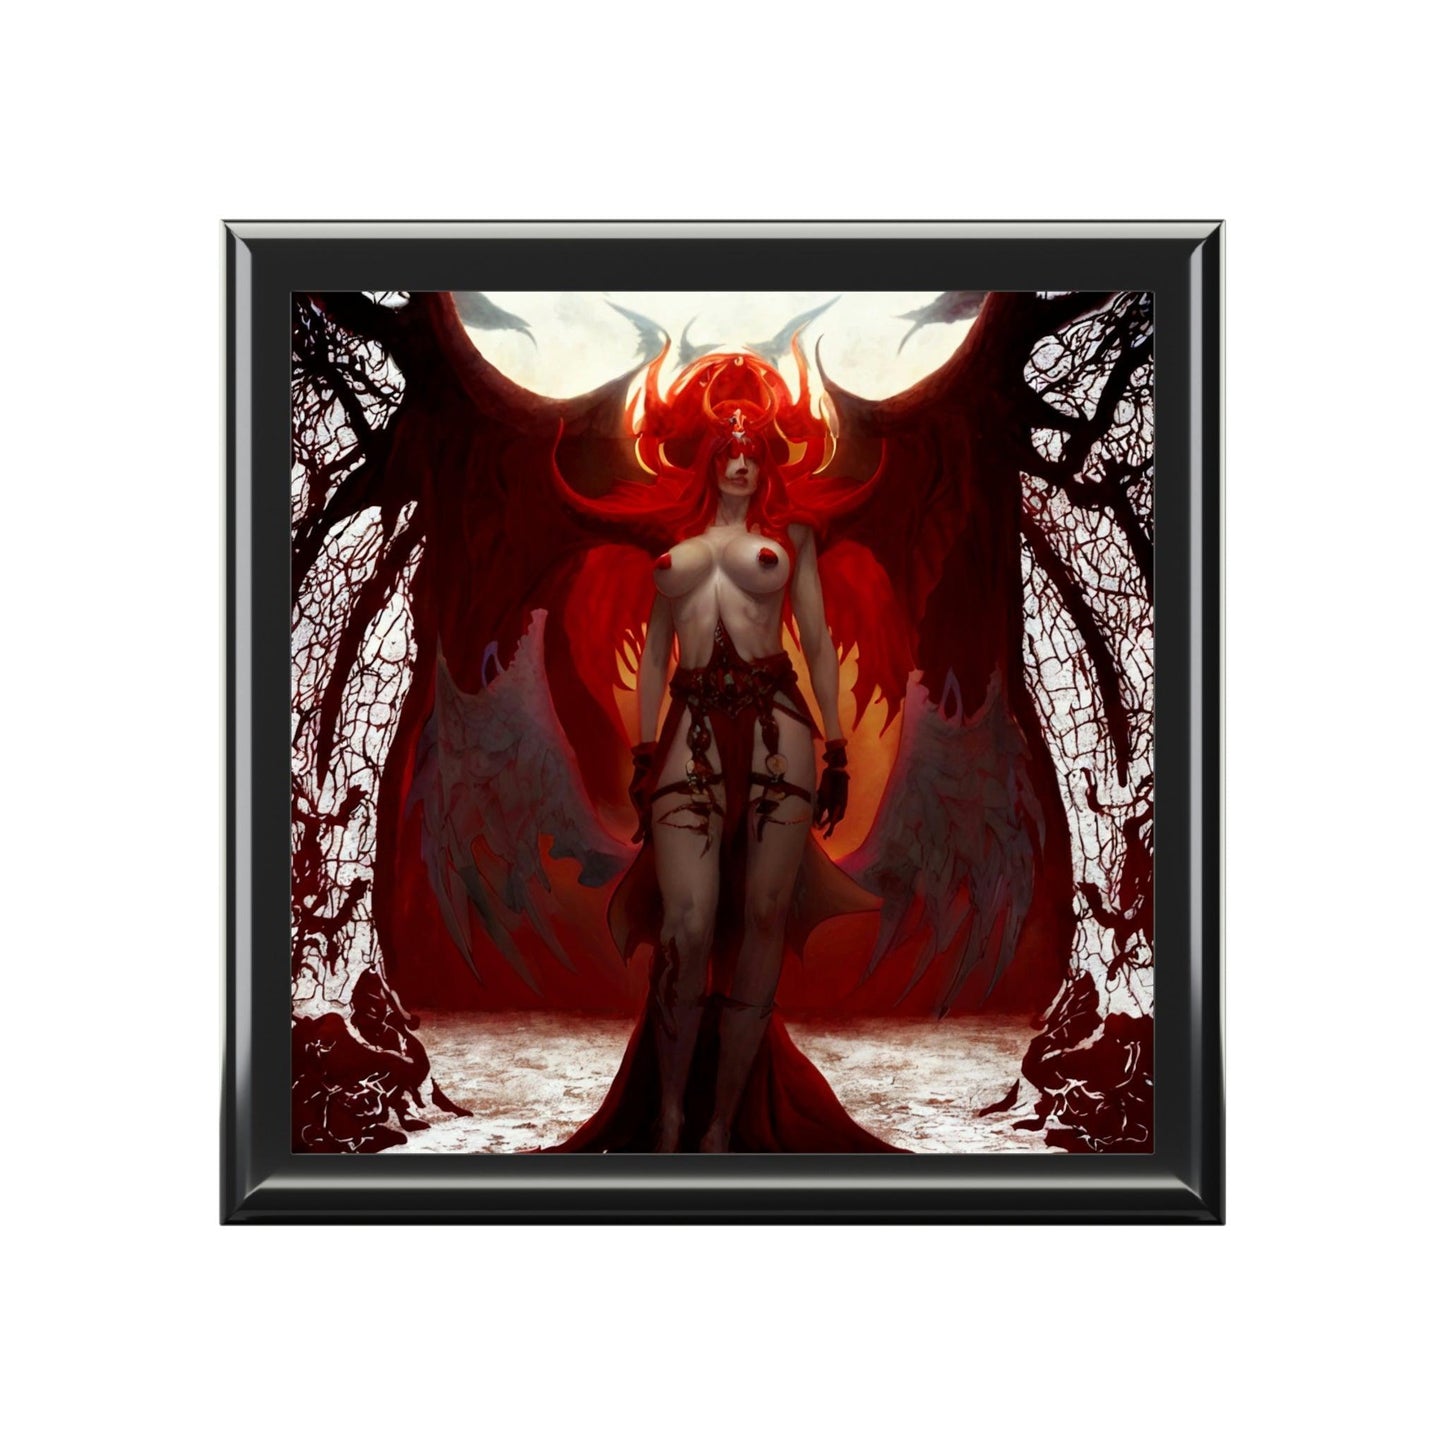 Lilith-Jewelry-Box-የእርስዎን-ታሊስማን-እና-ቀለበቶችን ለማከማቸት-2